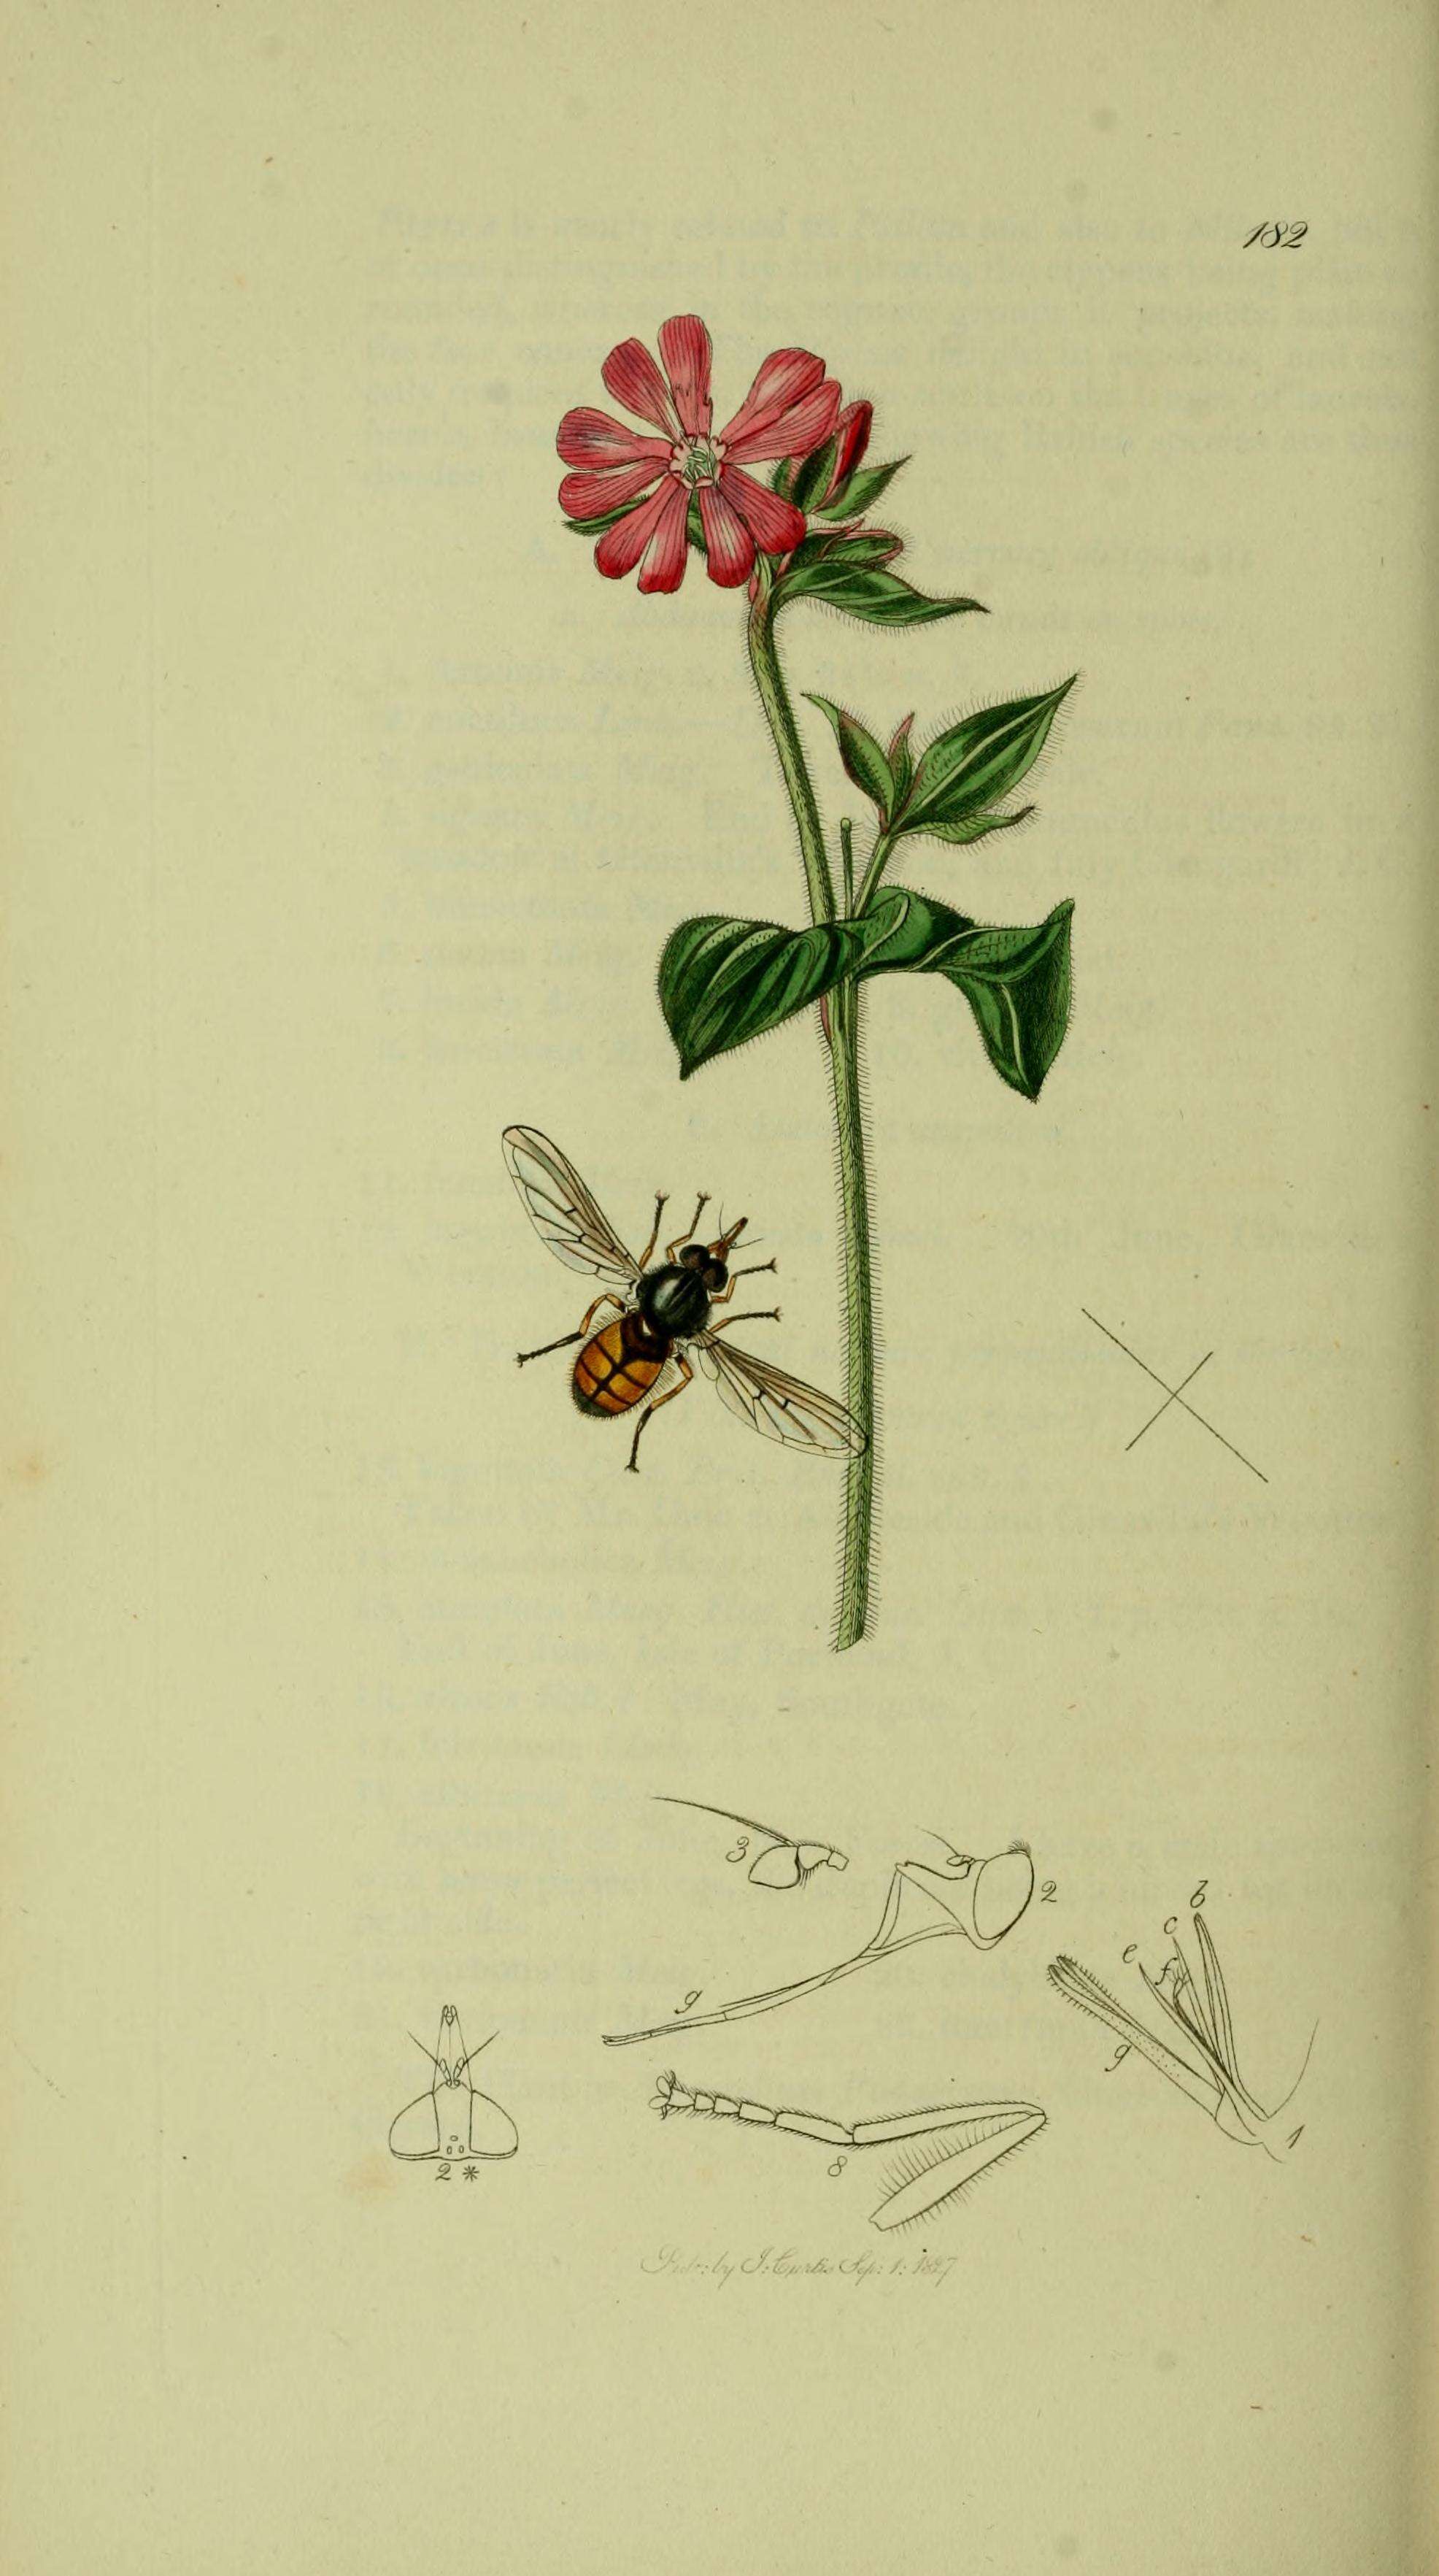 Image of Rhingia campestris Meigen 1822